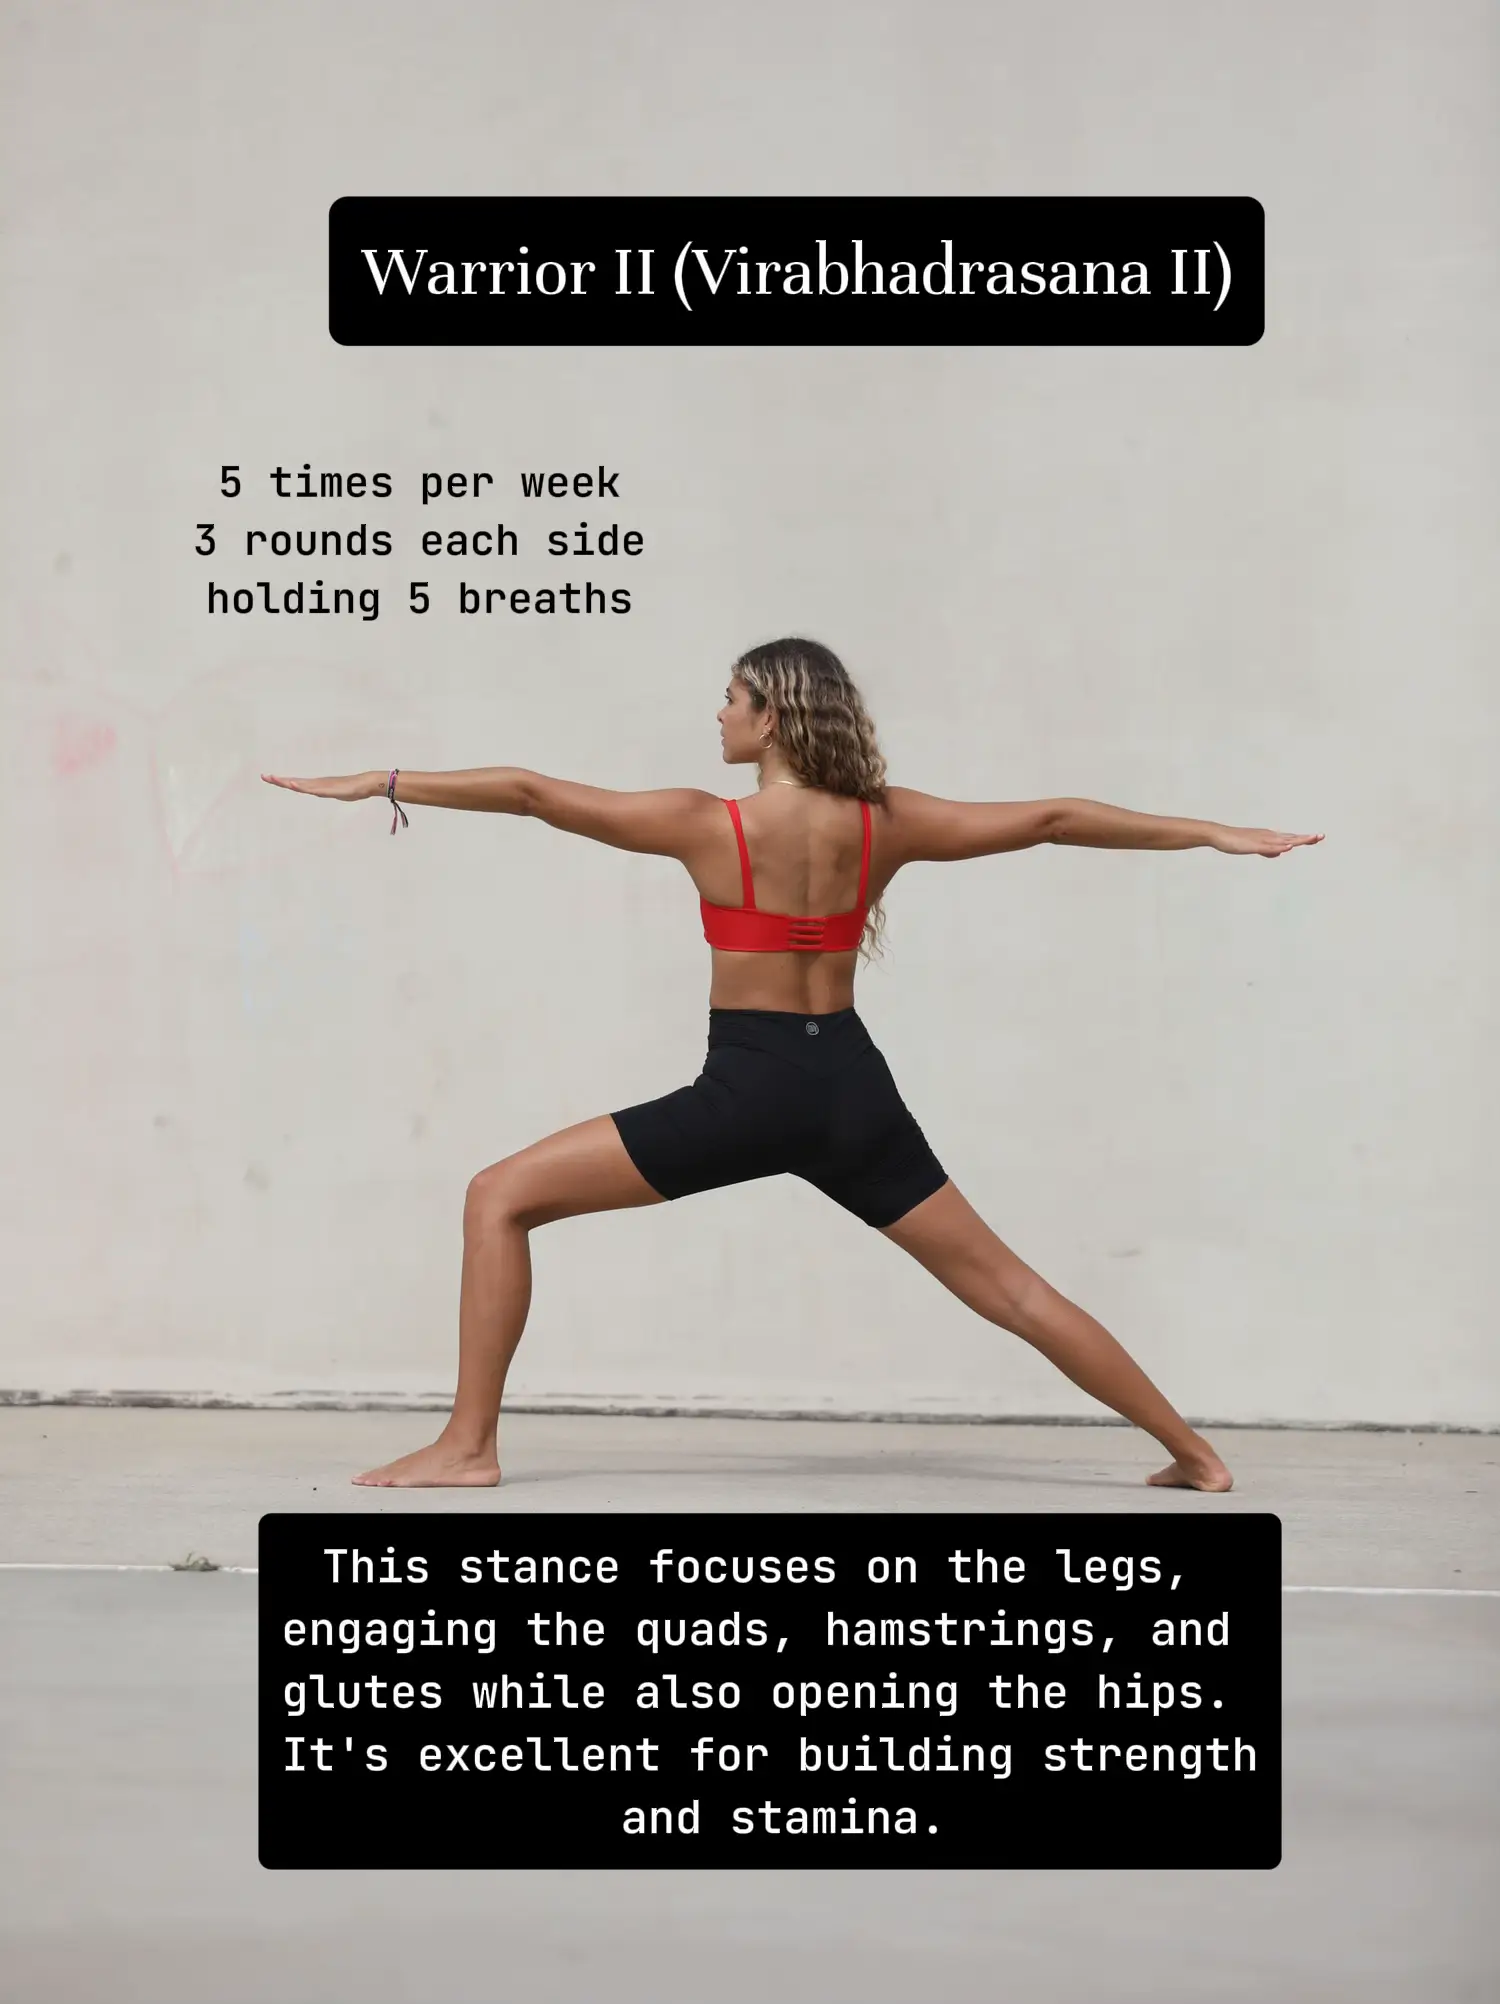 Warrior II (Virabhadrasana II) – Yoga Poses Guide by WorkoutLabs